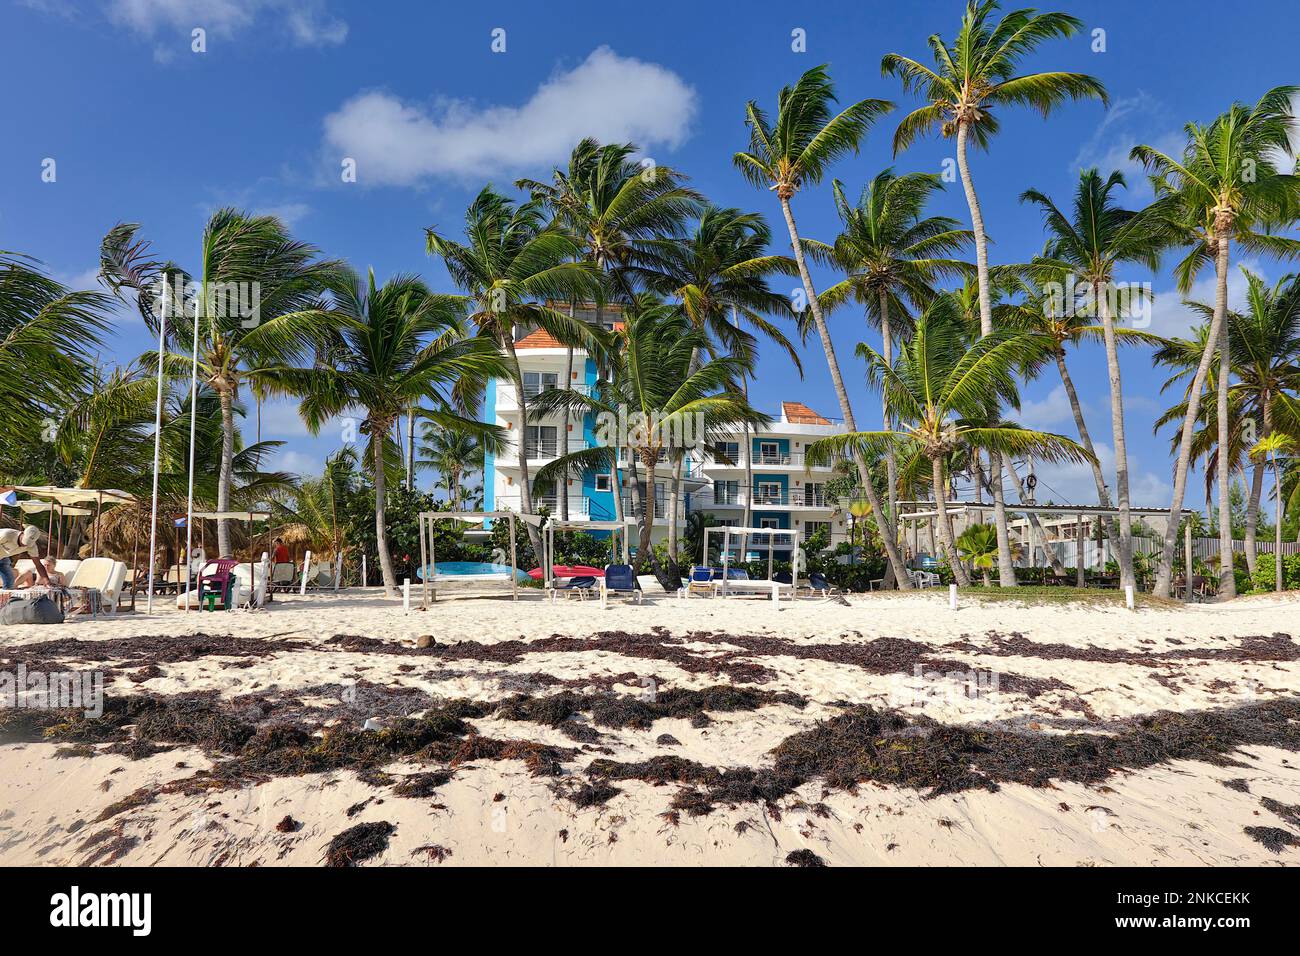 Playa contaminada con algas frente a un resort, Punta el Cortecito, Playa Bávaro, Punta Cana, República Dominicana, Caribe, América Central Foto de stock